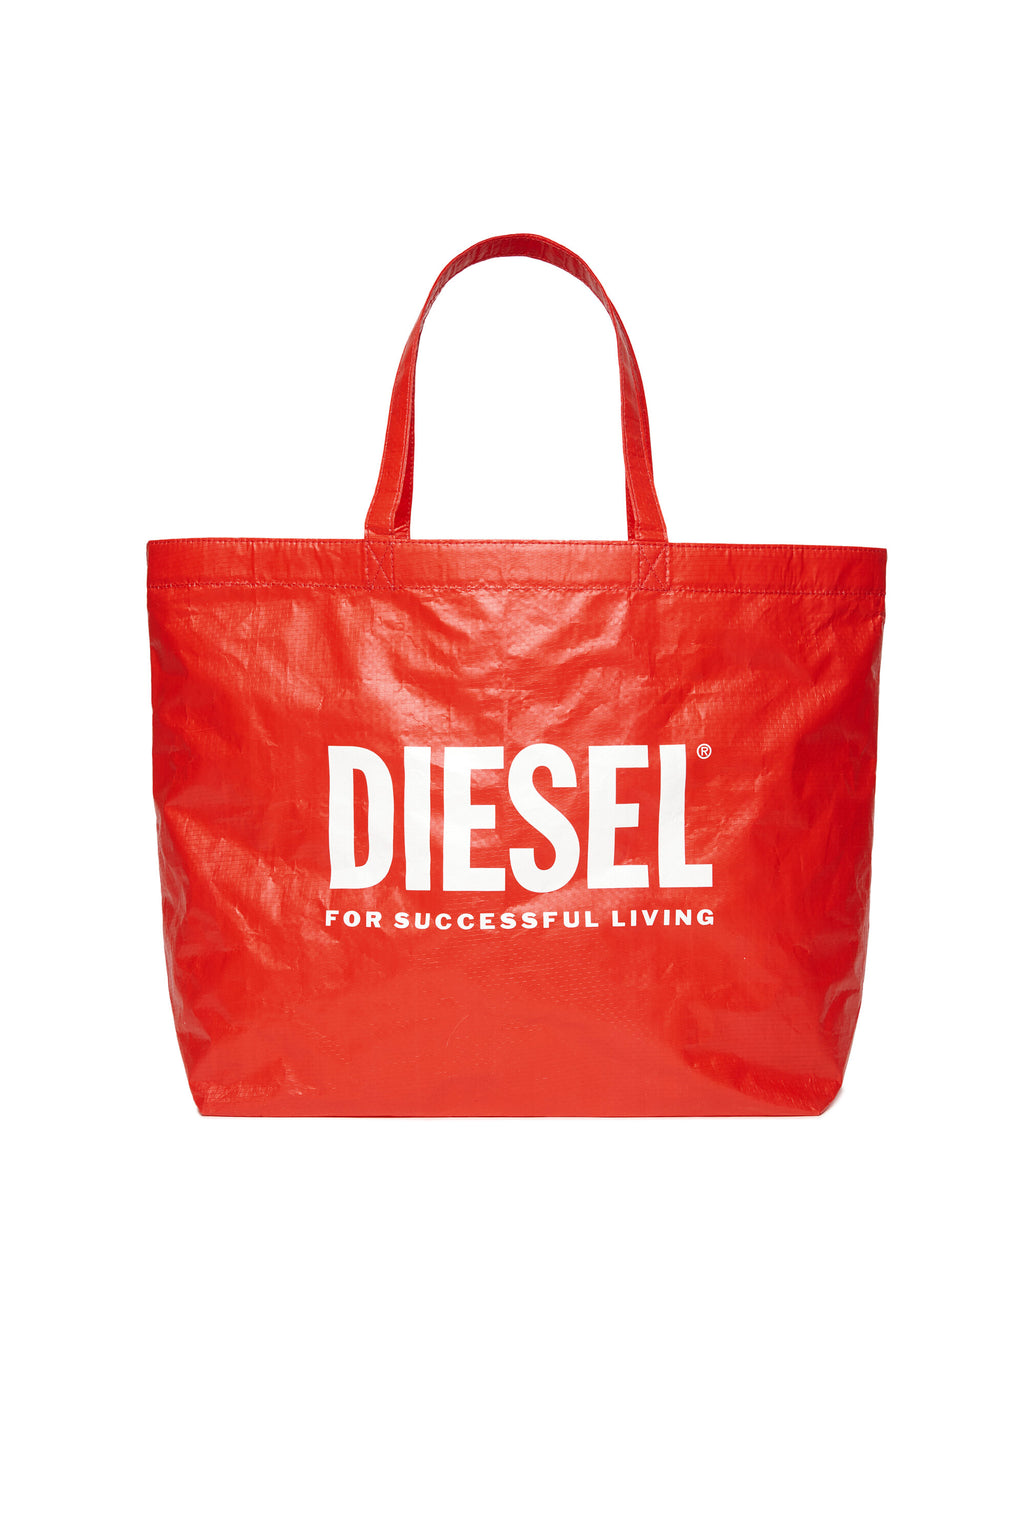 Branded shopper bag